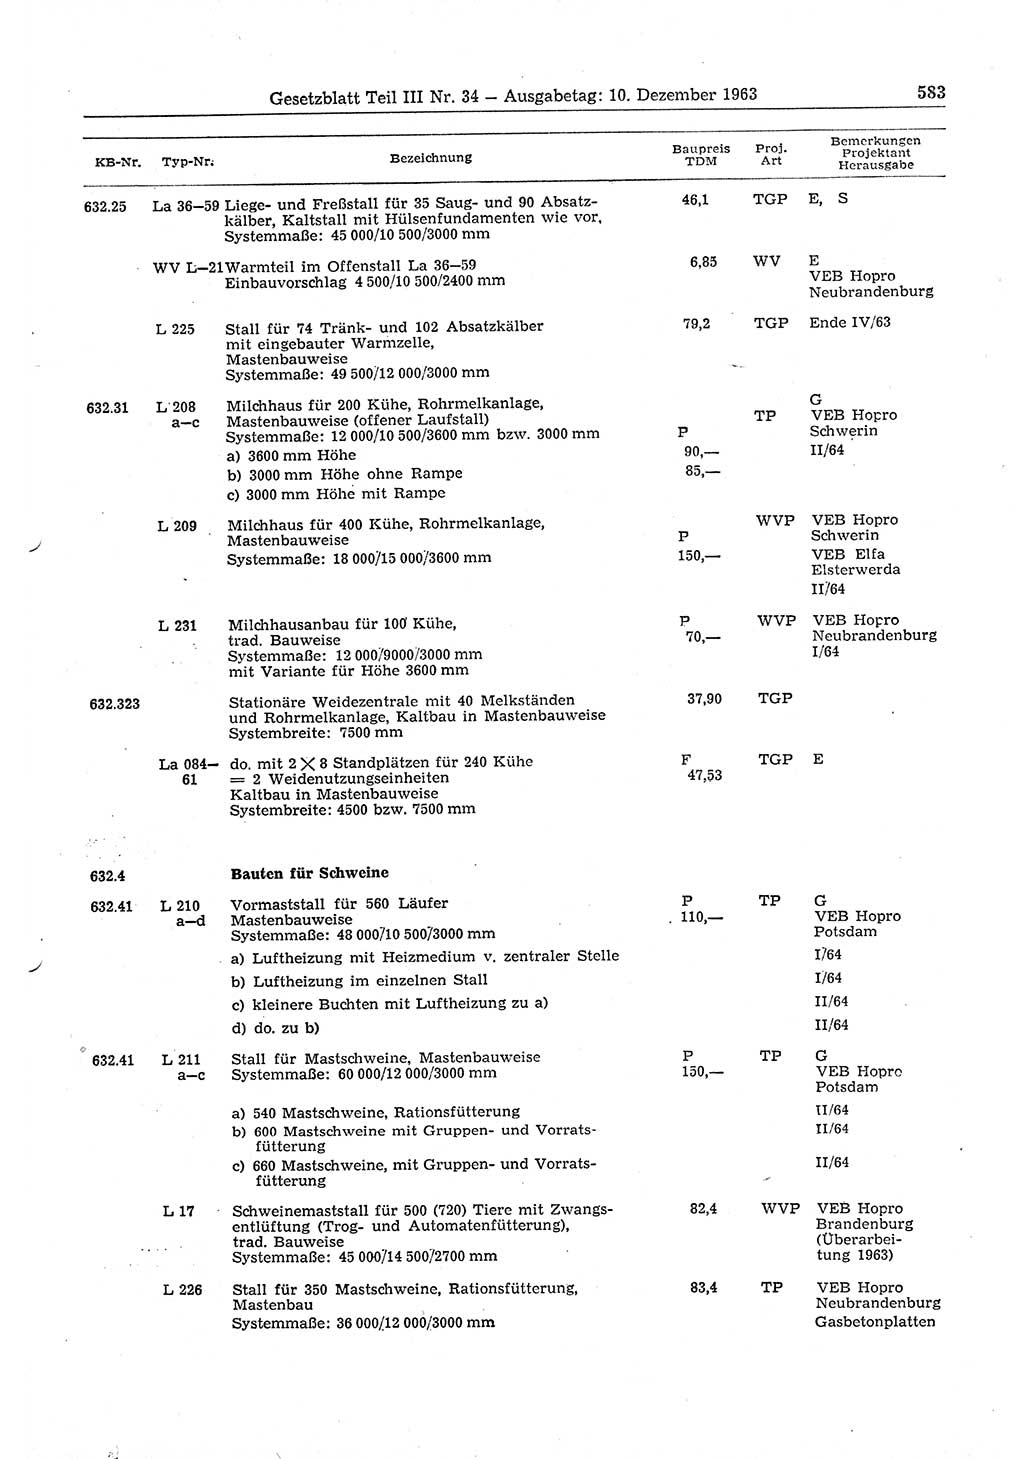 Gesetzblatt (GBl.) der Deutschen Demokratischen Republik (DDR) Teil ⅠⅠⅠ 1963, Seite 583 (GBl. DDR ⅠⅠⅠ 1963, S. 583)